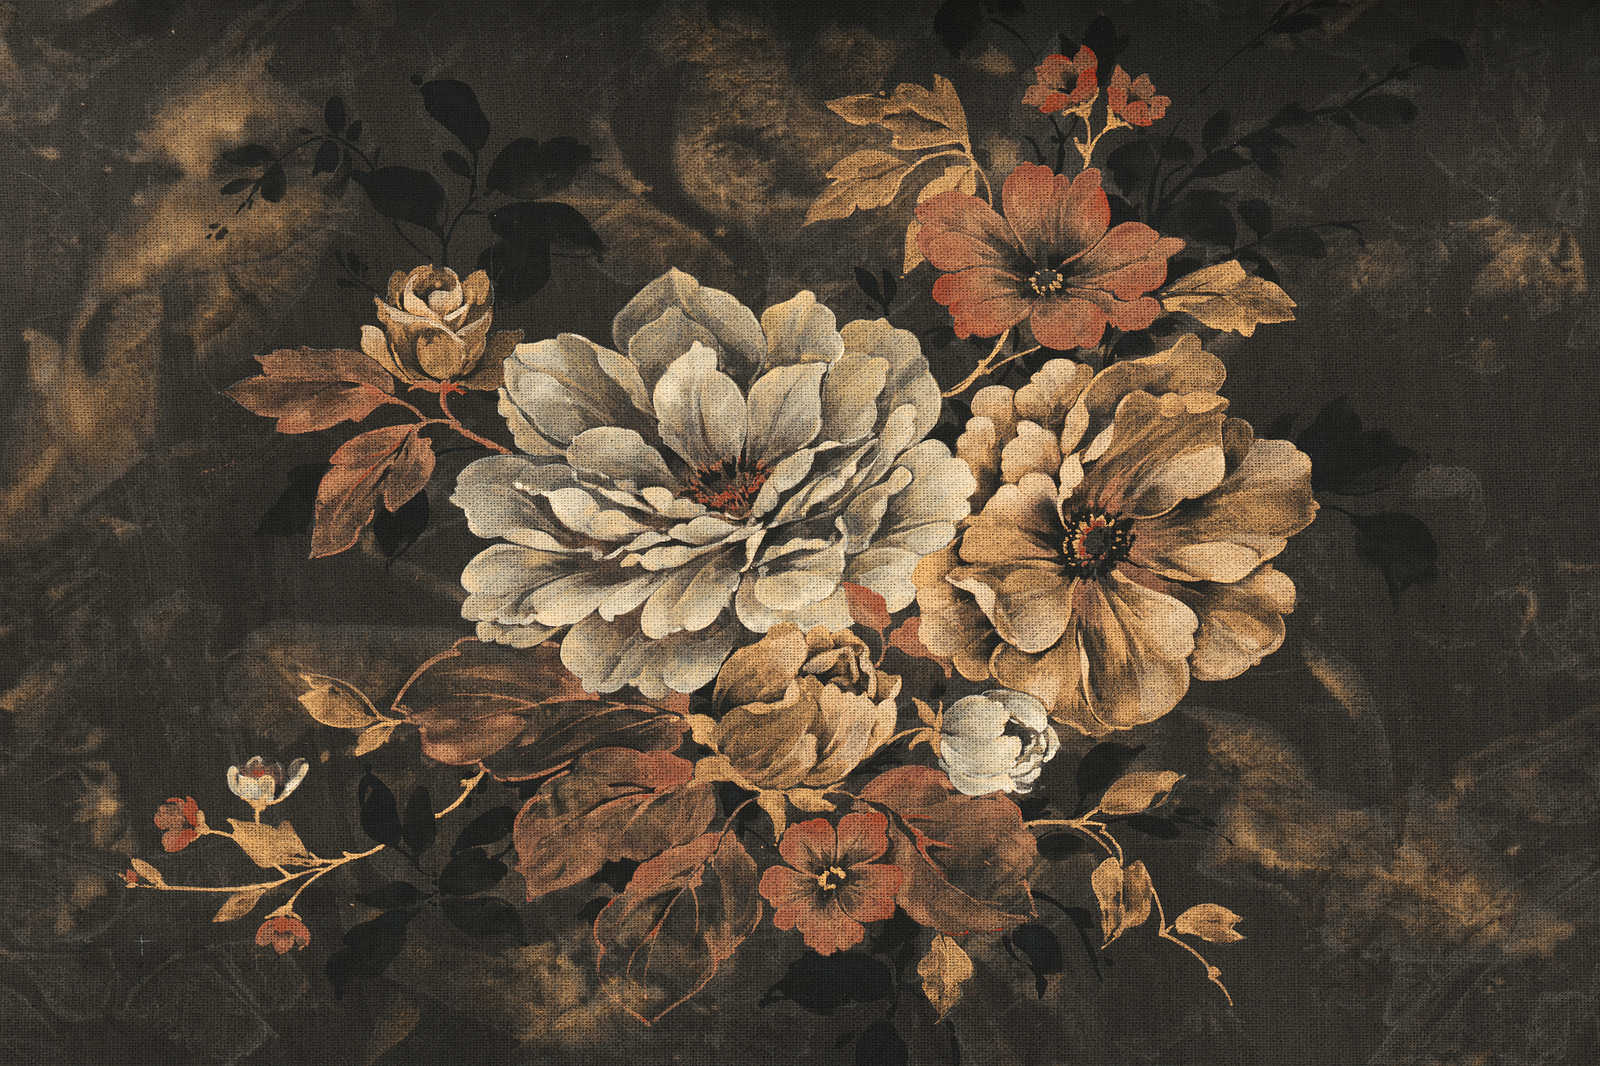             Canvas schilderij bloem ontwerp, olieverfschilderij in vintage look - 1.20 m x 0.80 m
        